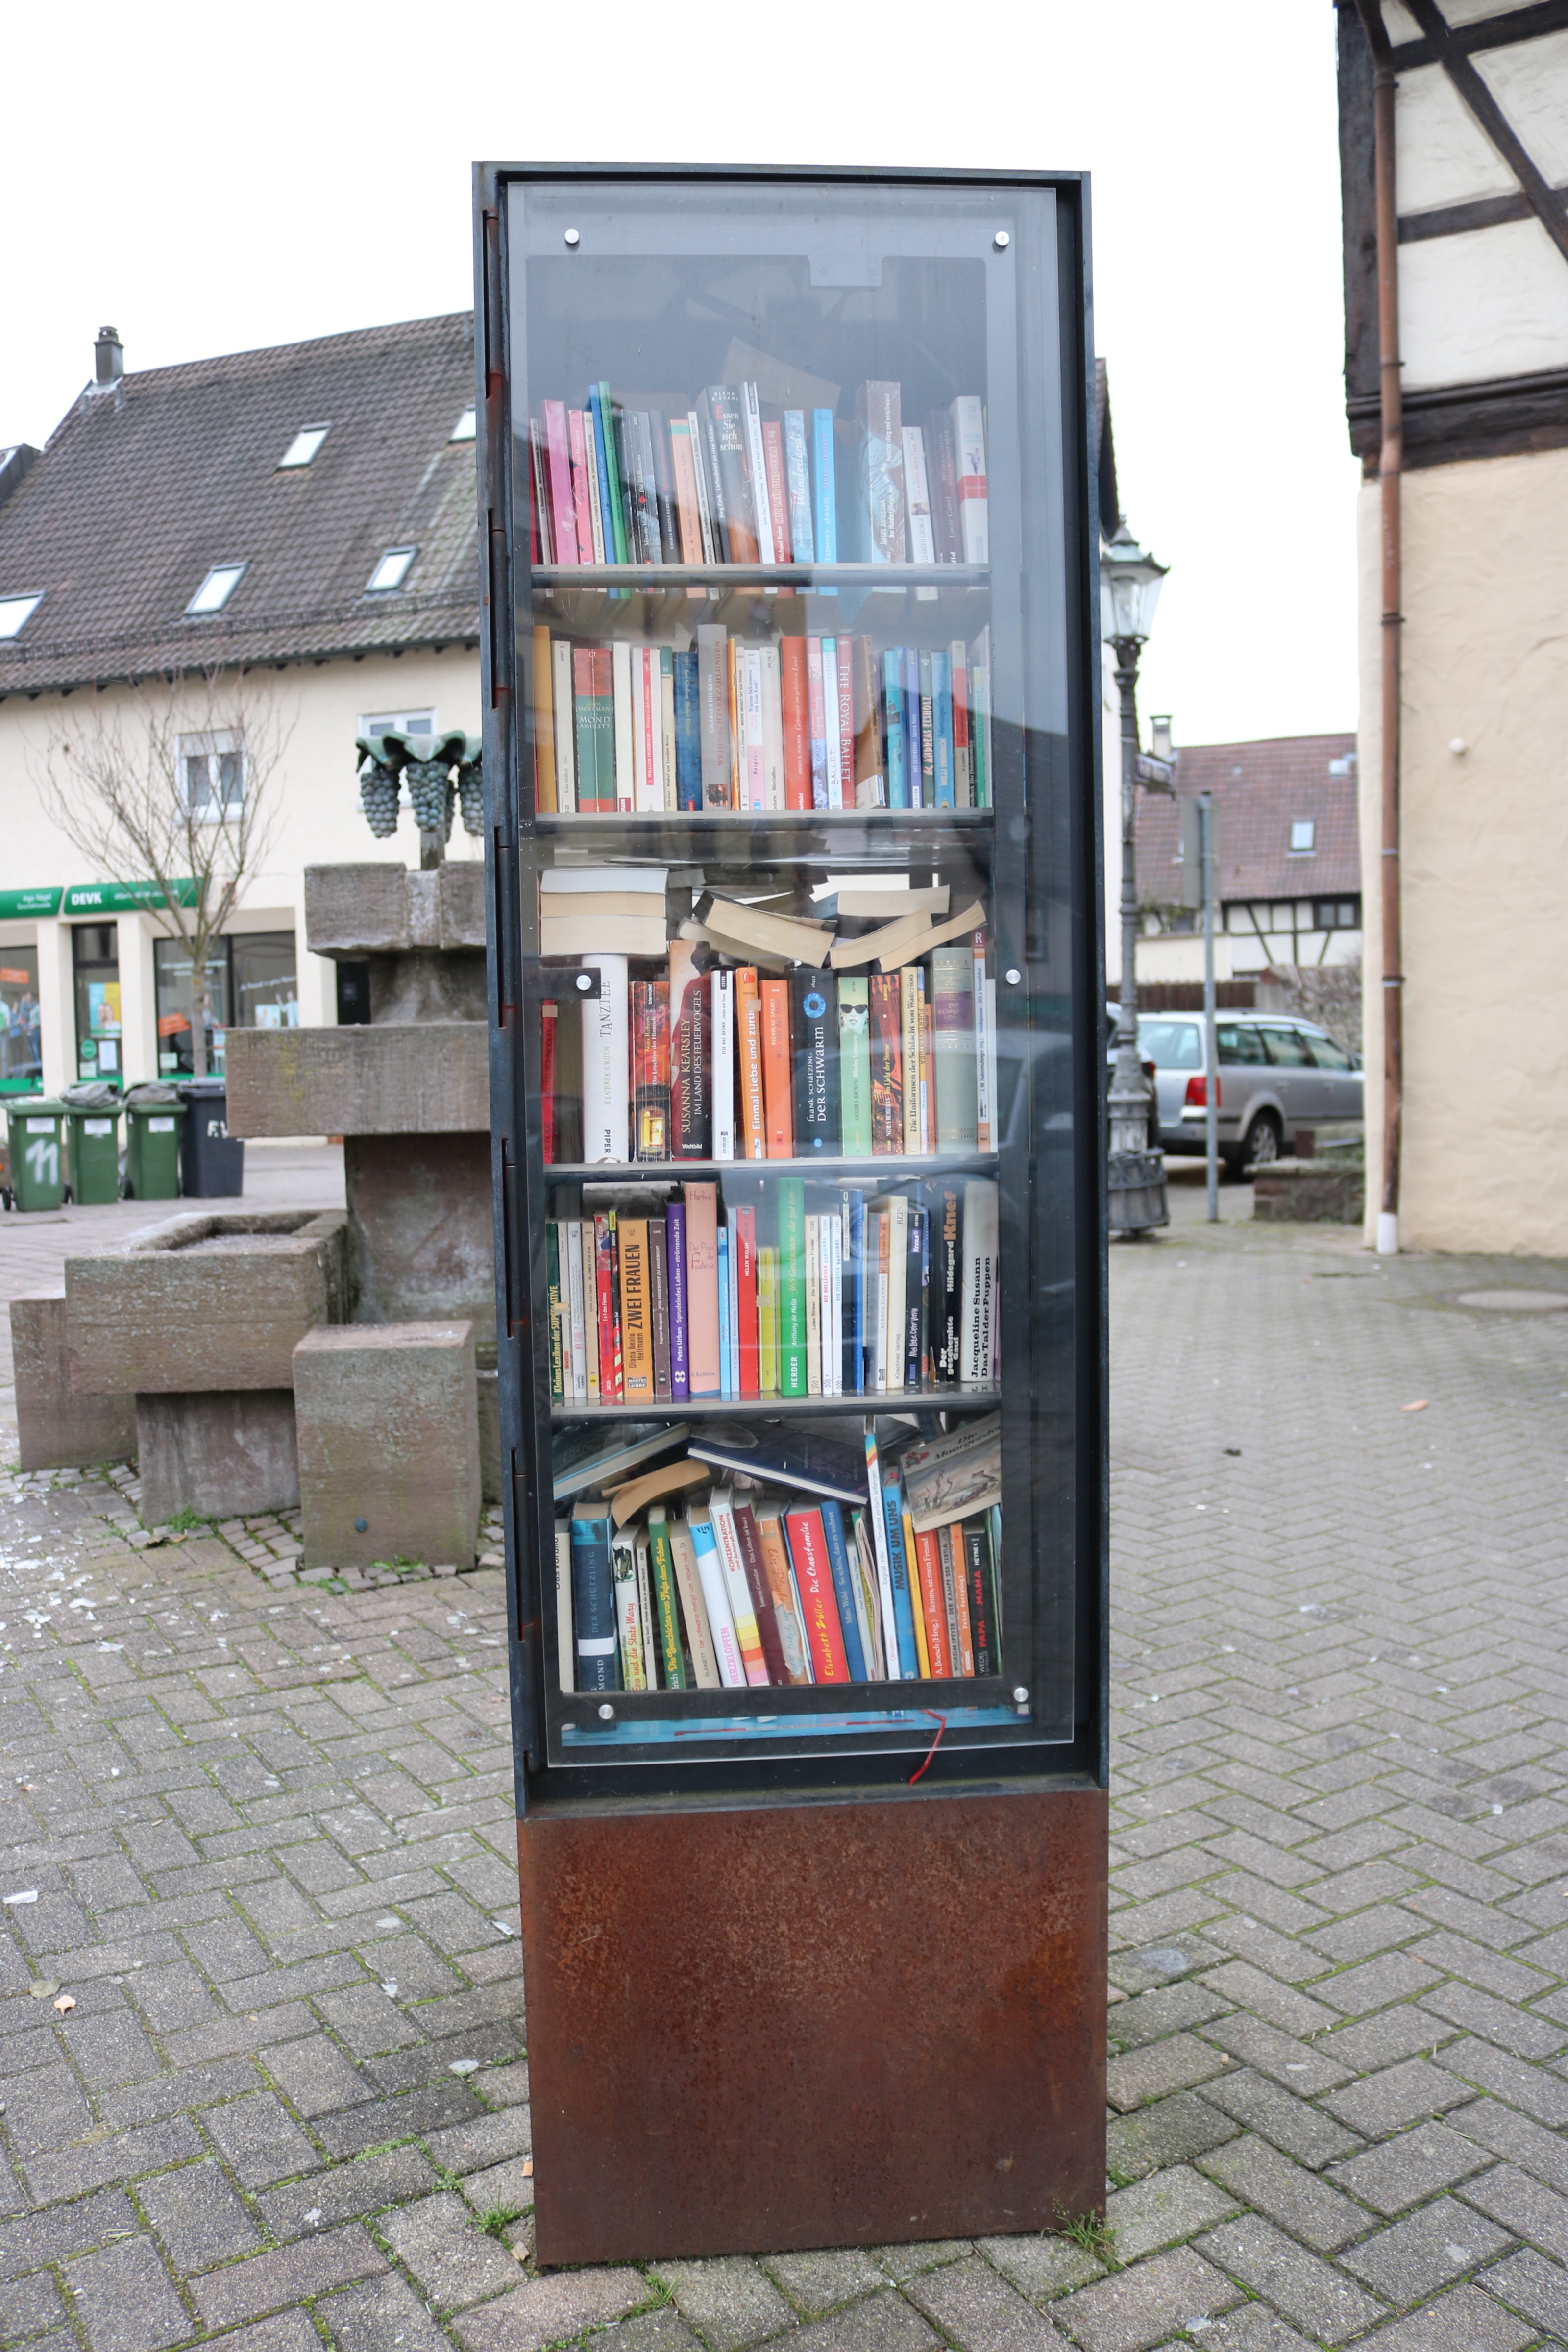  Der Bücherschrank in der Bahnhofstraße. 